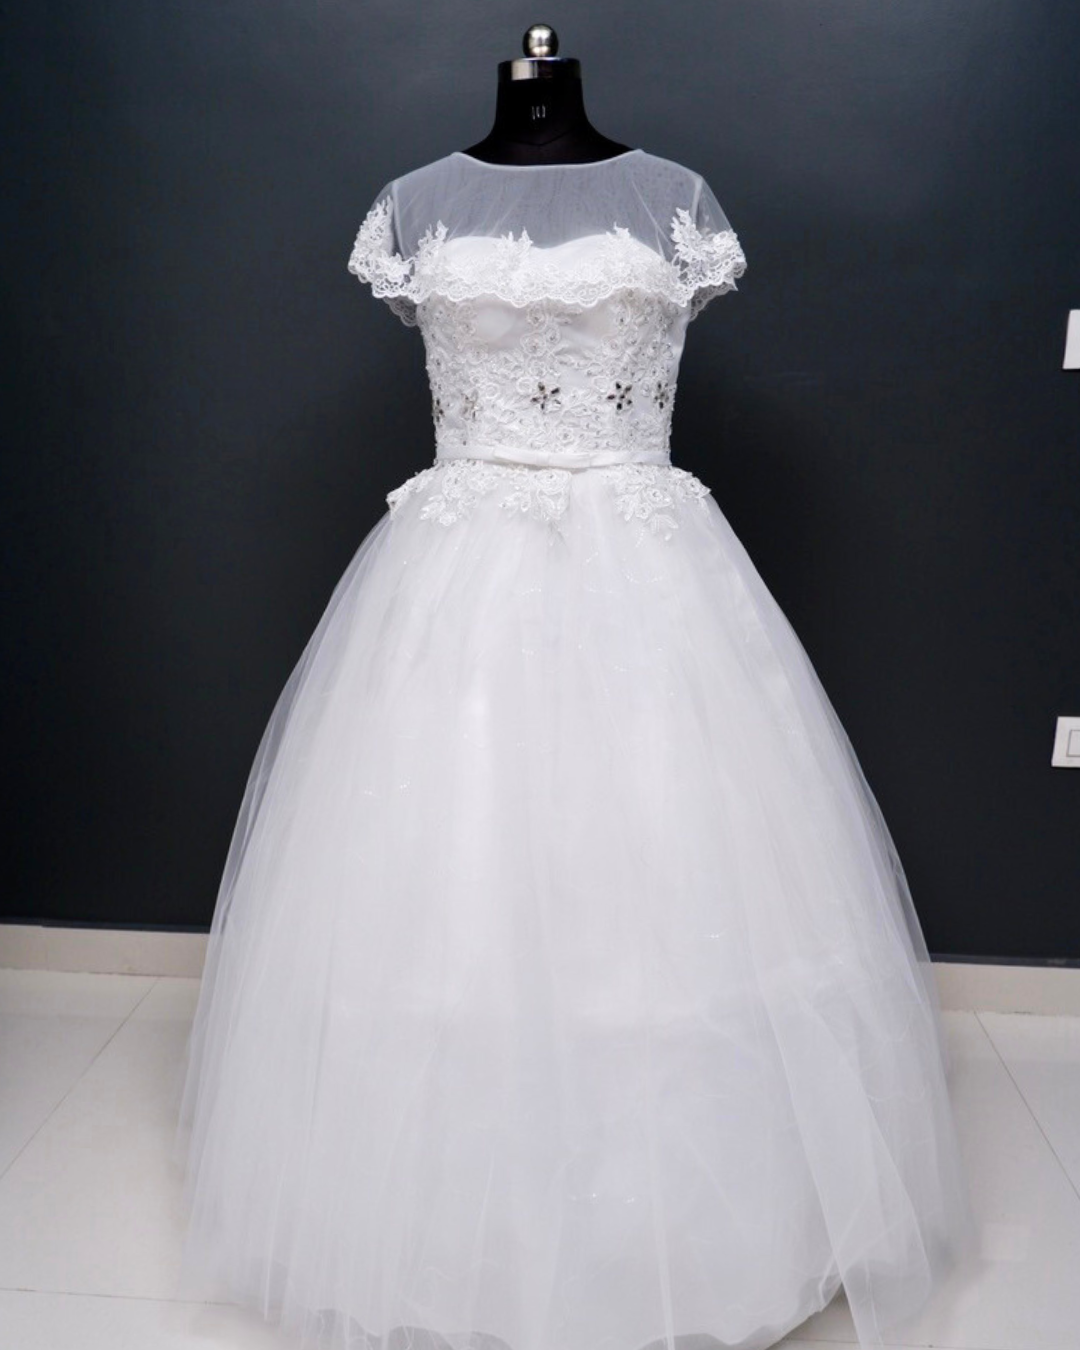 Overcoat White Wedding Dress